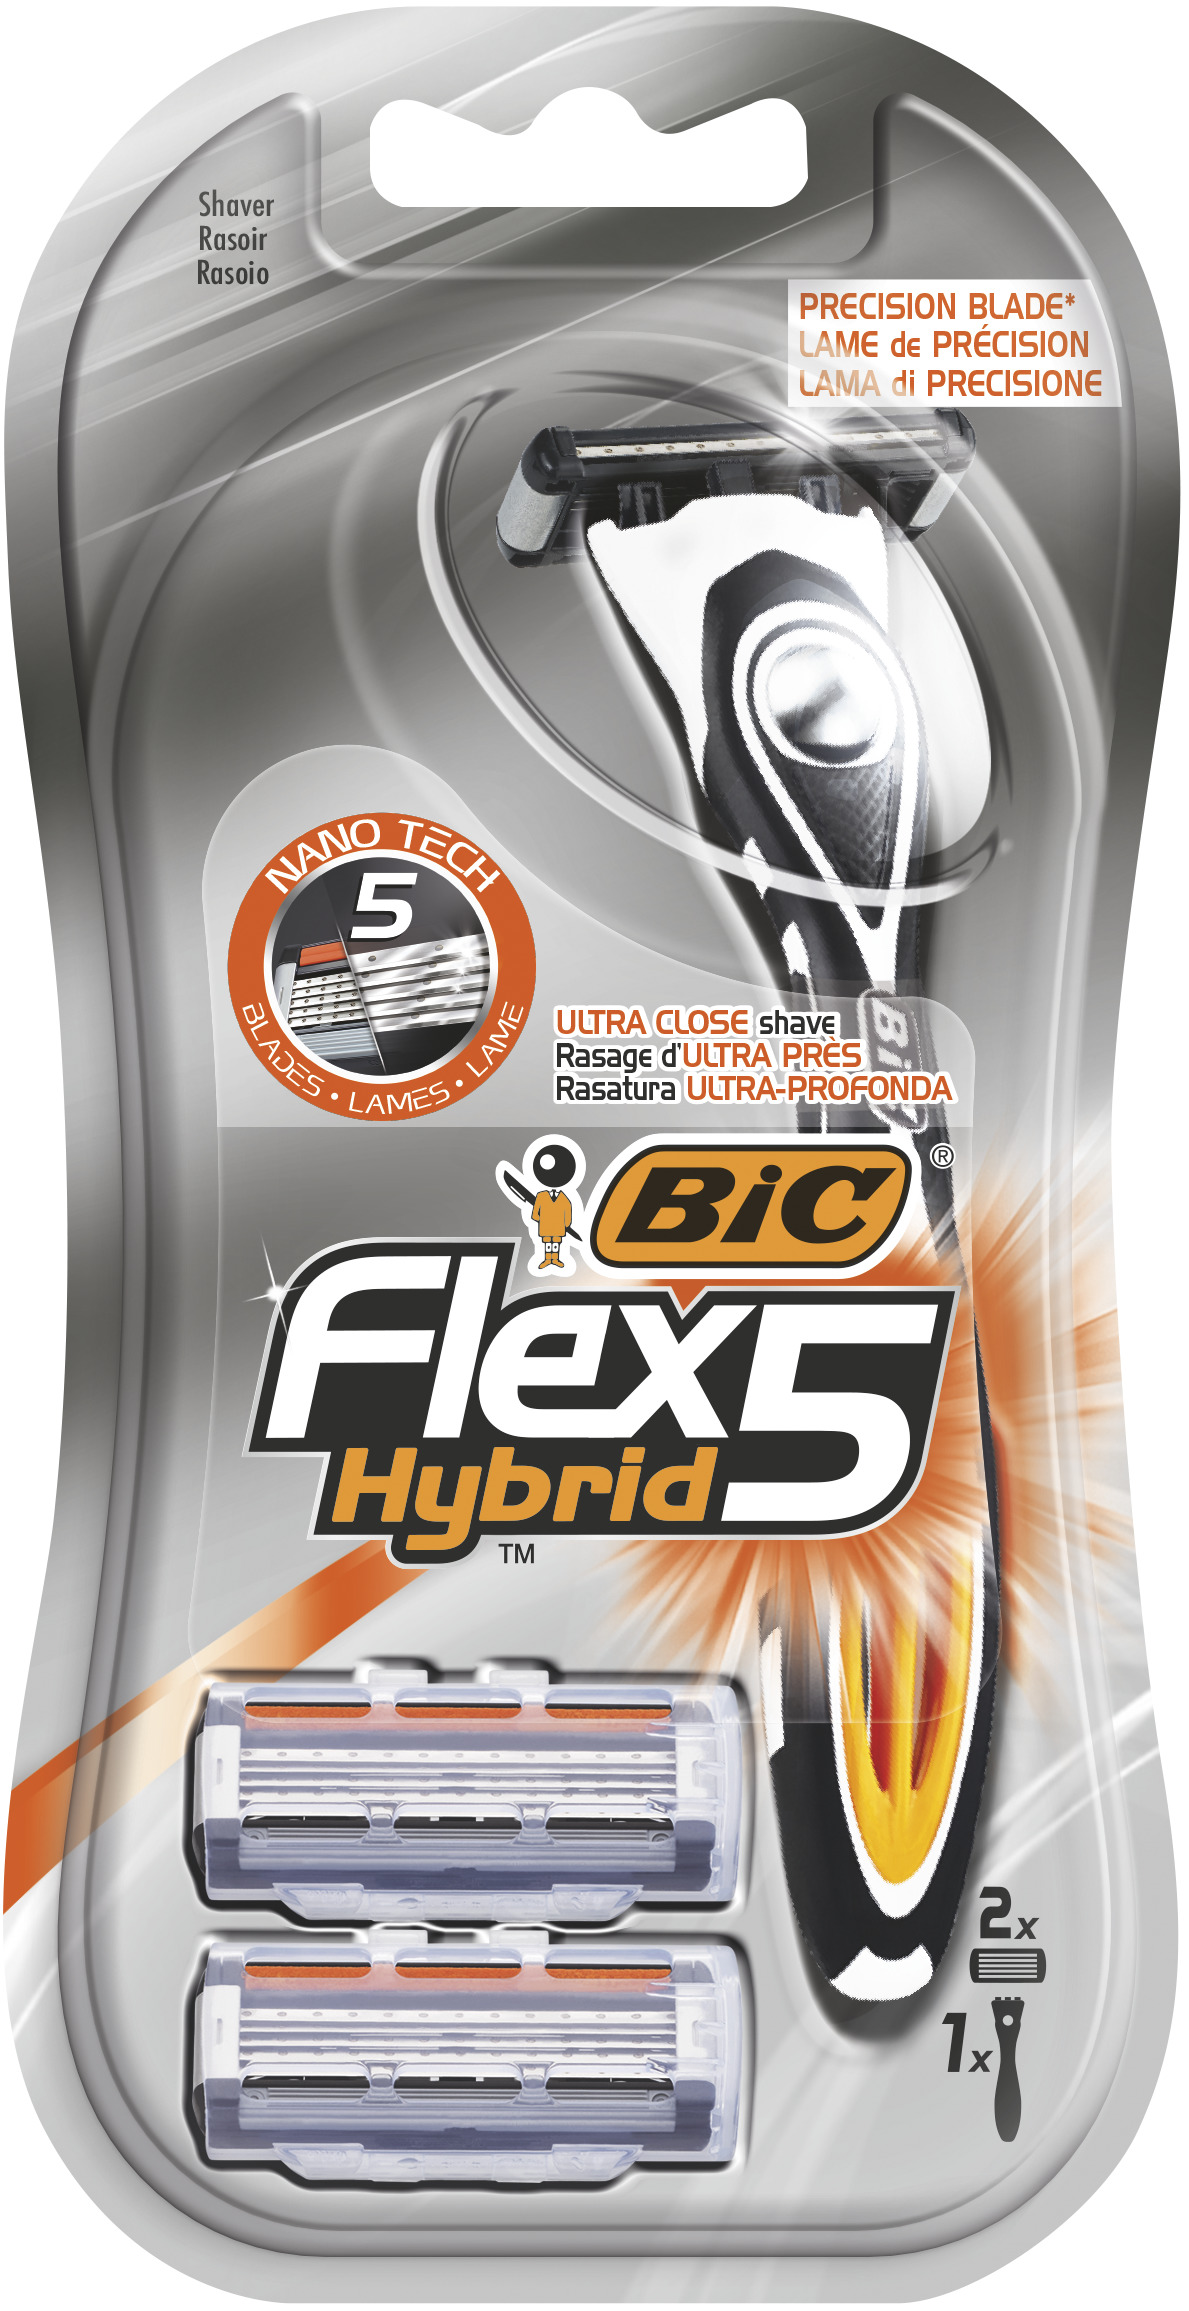 Станок для бритья BIC Flex 5 Hybrid + 2 кассеты сменные кассеты bic flex 3 hybrid 8 шт